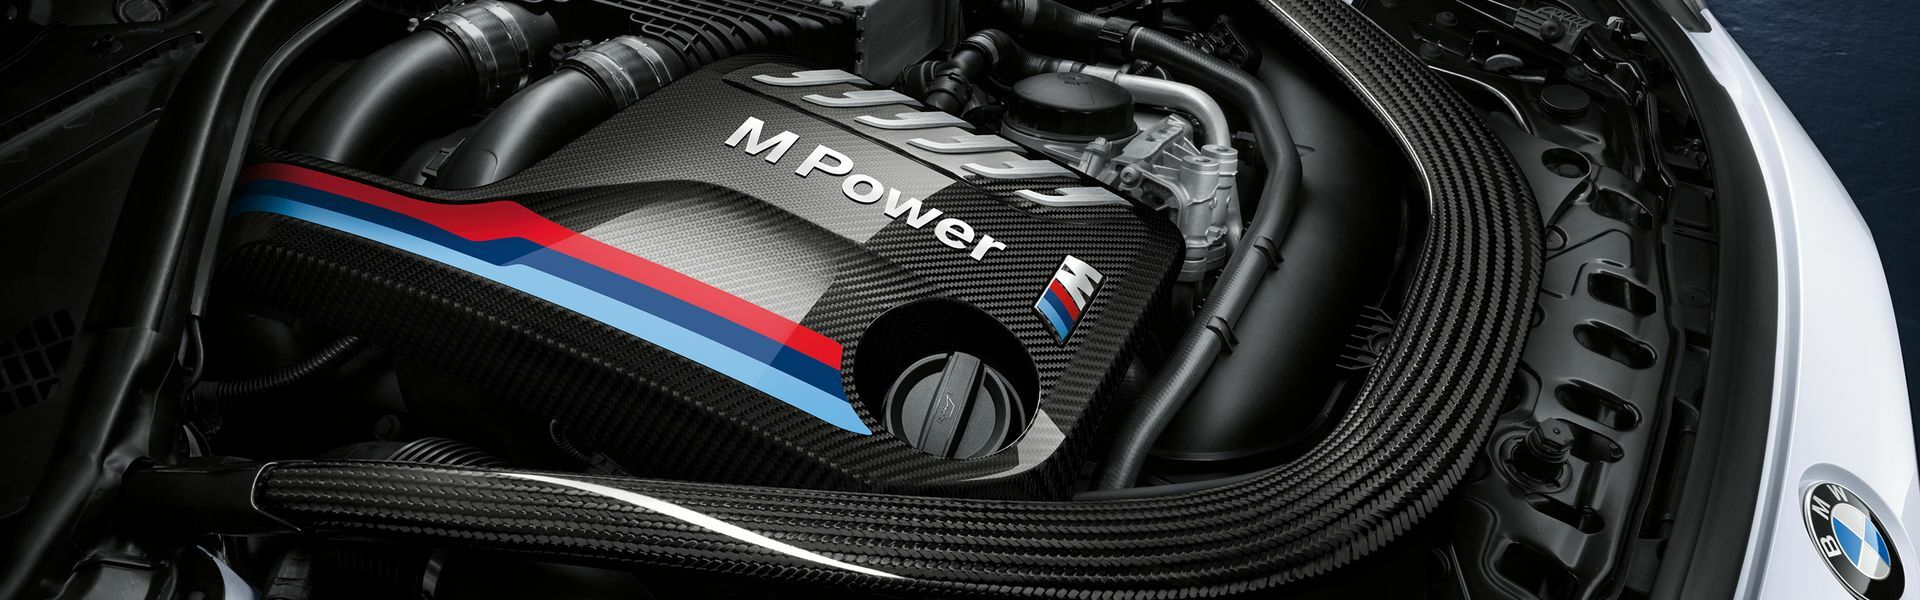 Zvýšení výkonu/ Softwarové úpravy/ Drobné performance díly pro automobil BMW M3 F80